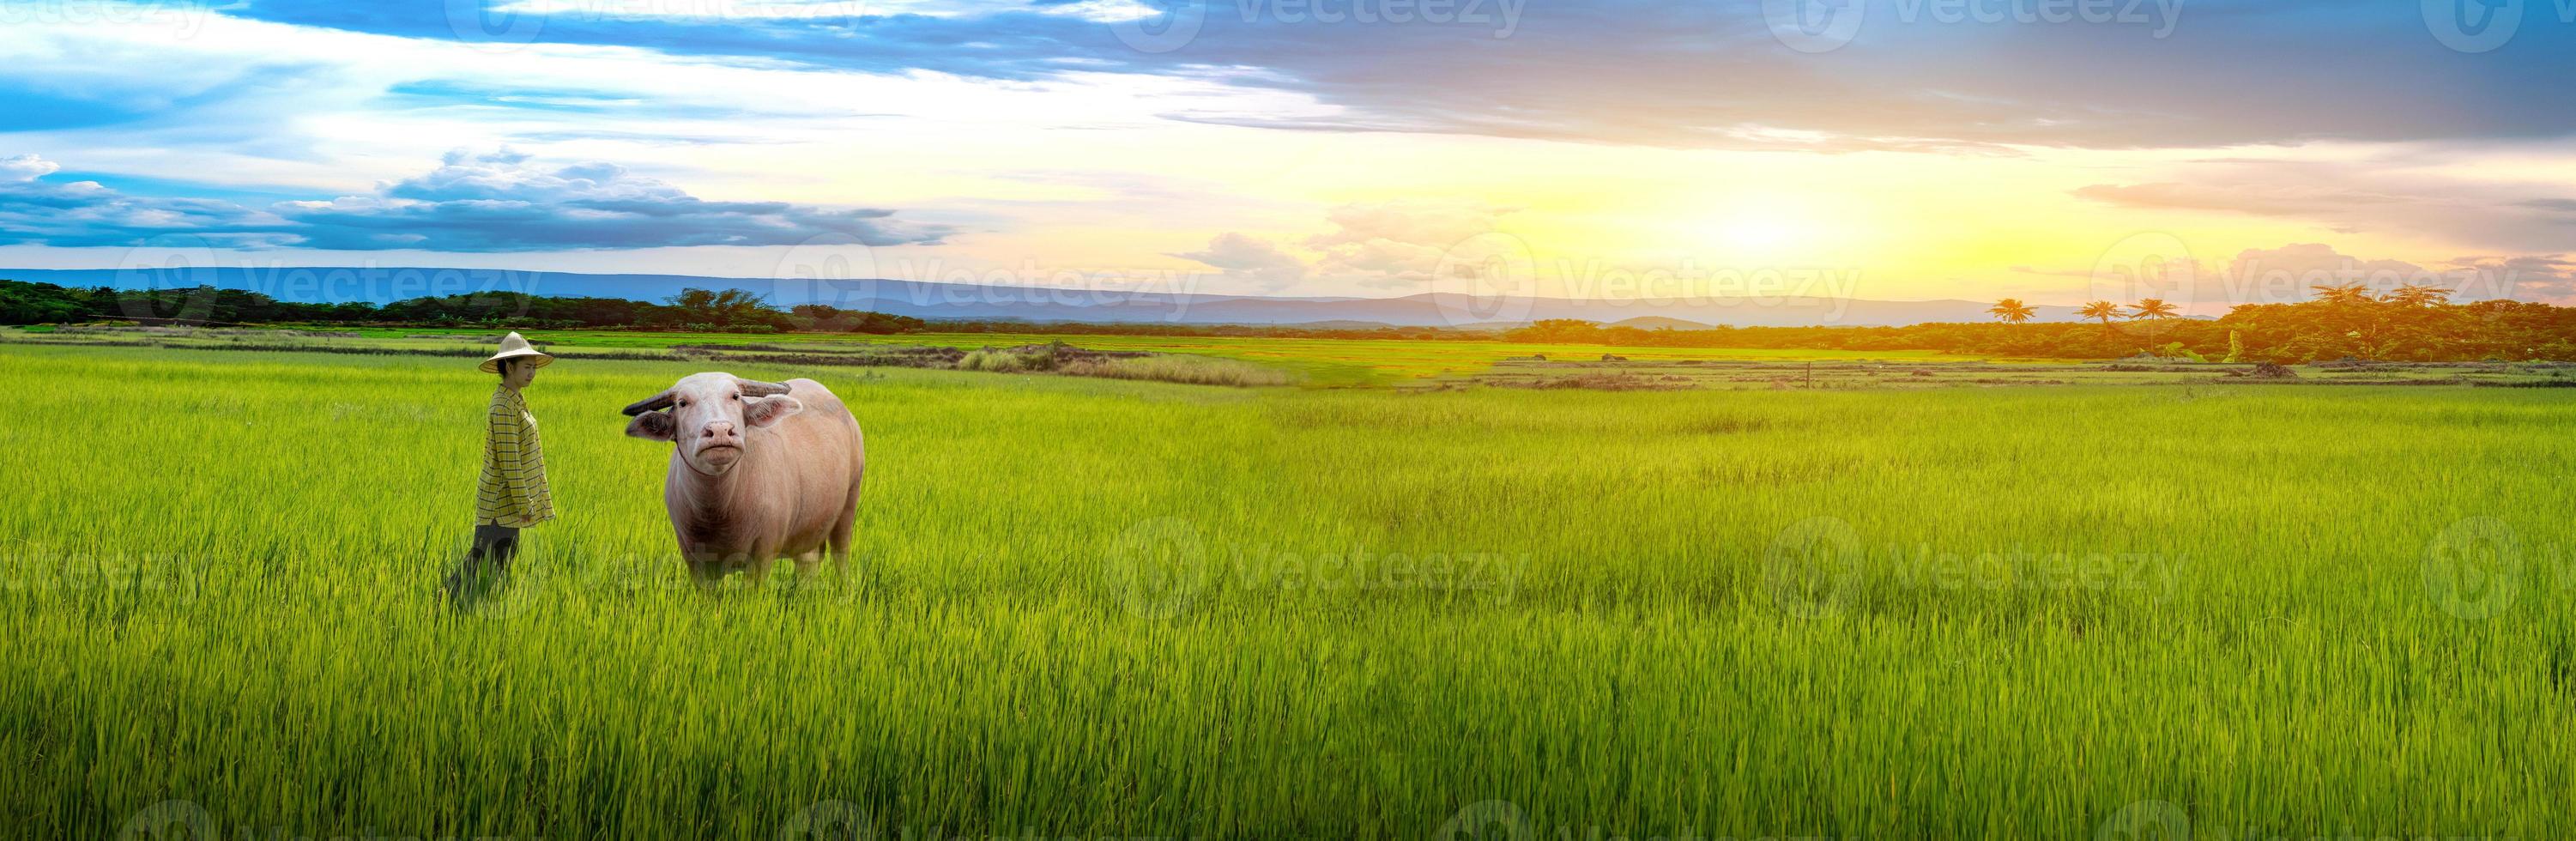 agricultrice regardant le buffle et les semis de riz vert dans une rizière avec un beau ciel et des nuages photo